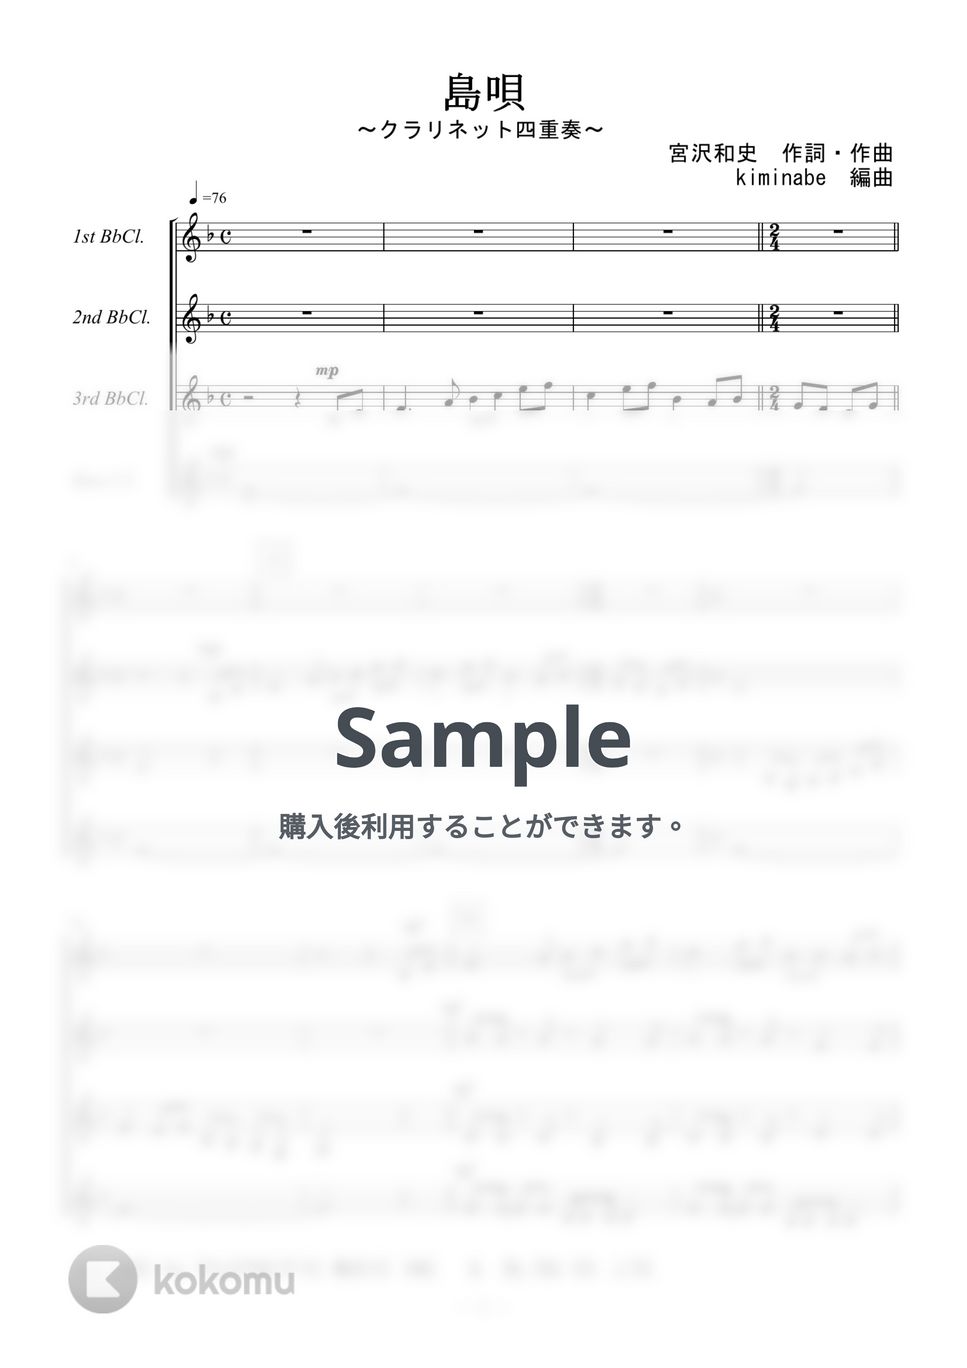 宮沢和史 - 島唄 (クラリネット四重奏) 楽譜 by kiminabe